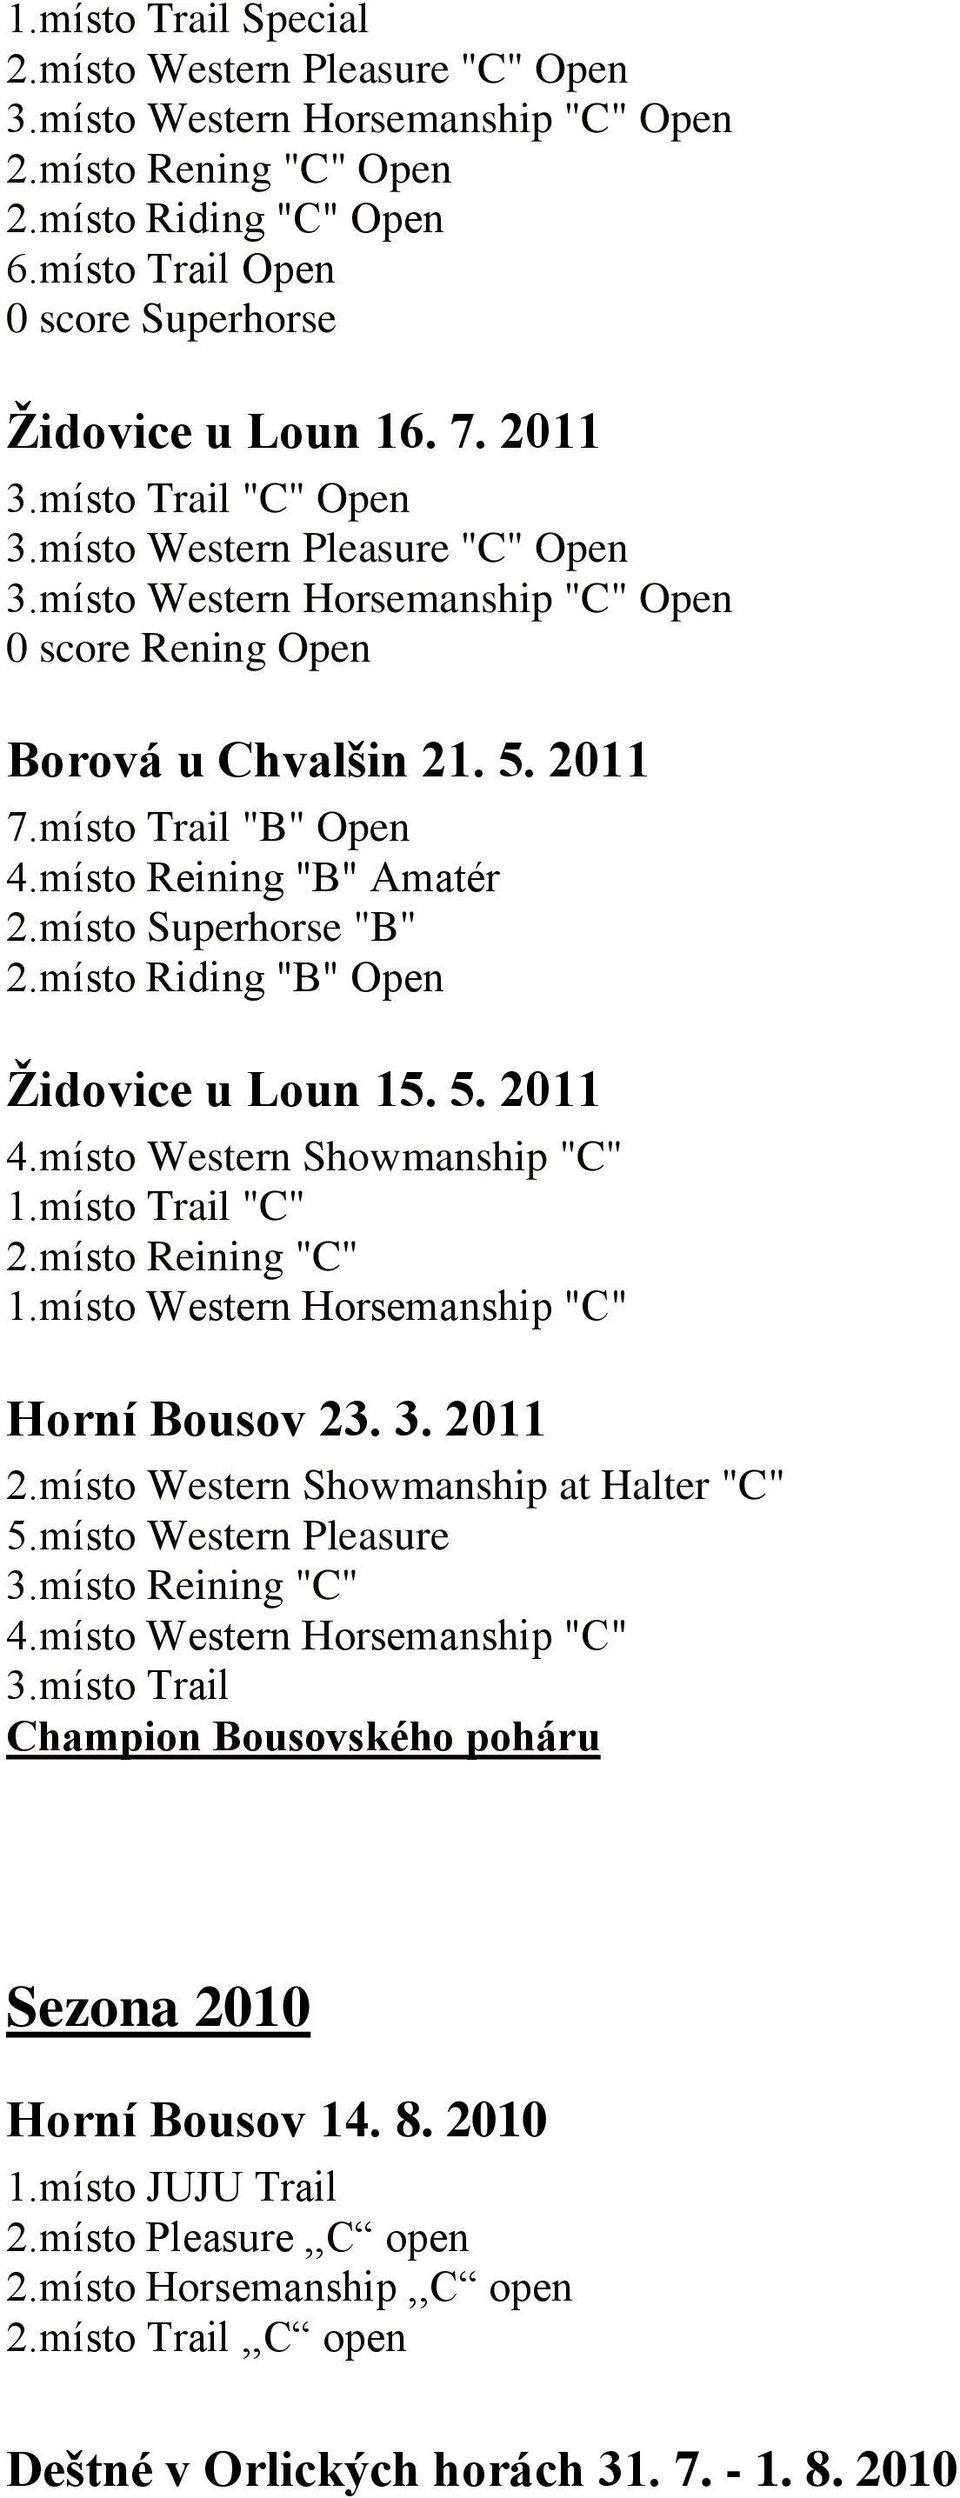 místo Reining "B" Amatér 2.místo Superhorse "B" 2.místo Riding "B" Open Židovice u Loun 15. 5. 2011 4.místo Western Showmanship "C" 1.místo Trail "C" 2.místo Reining "C" 1.